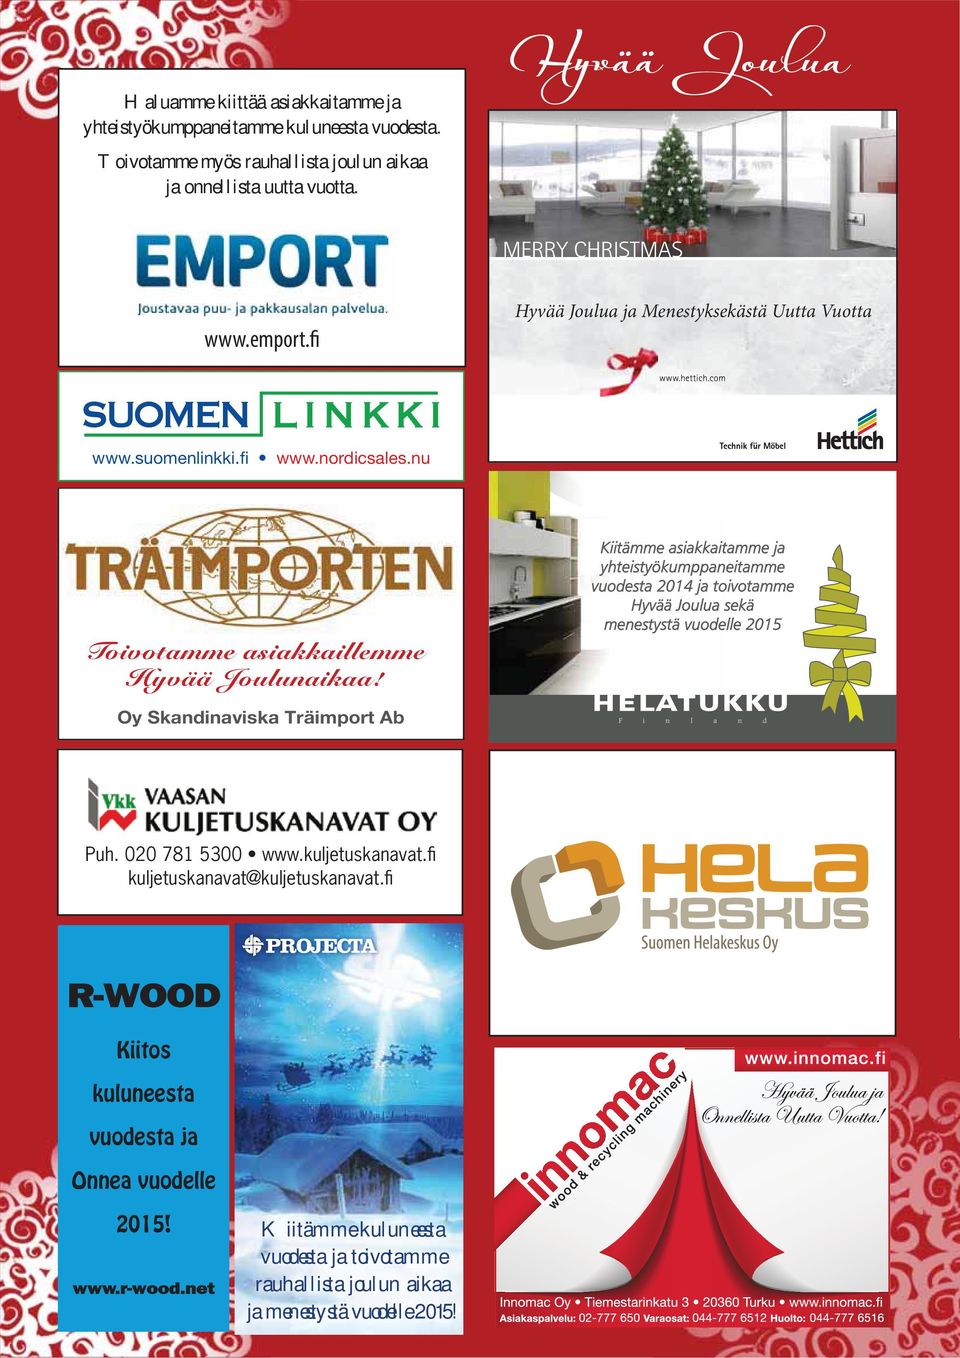 nu Kiitämme asiakkaitamme ja yhteistyökumppaneitamme vuodesta 2014 ja toivotamme Hyvää Joulua sekä menestystä vuodelle 2015 Oy Skandinaviska Träimport Ab Puh.